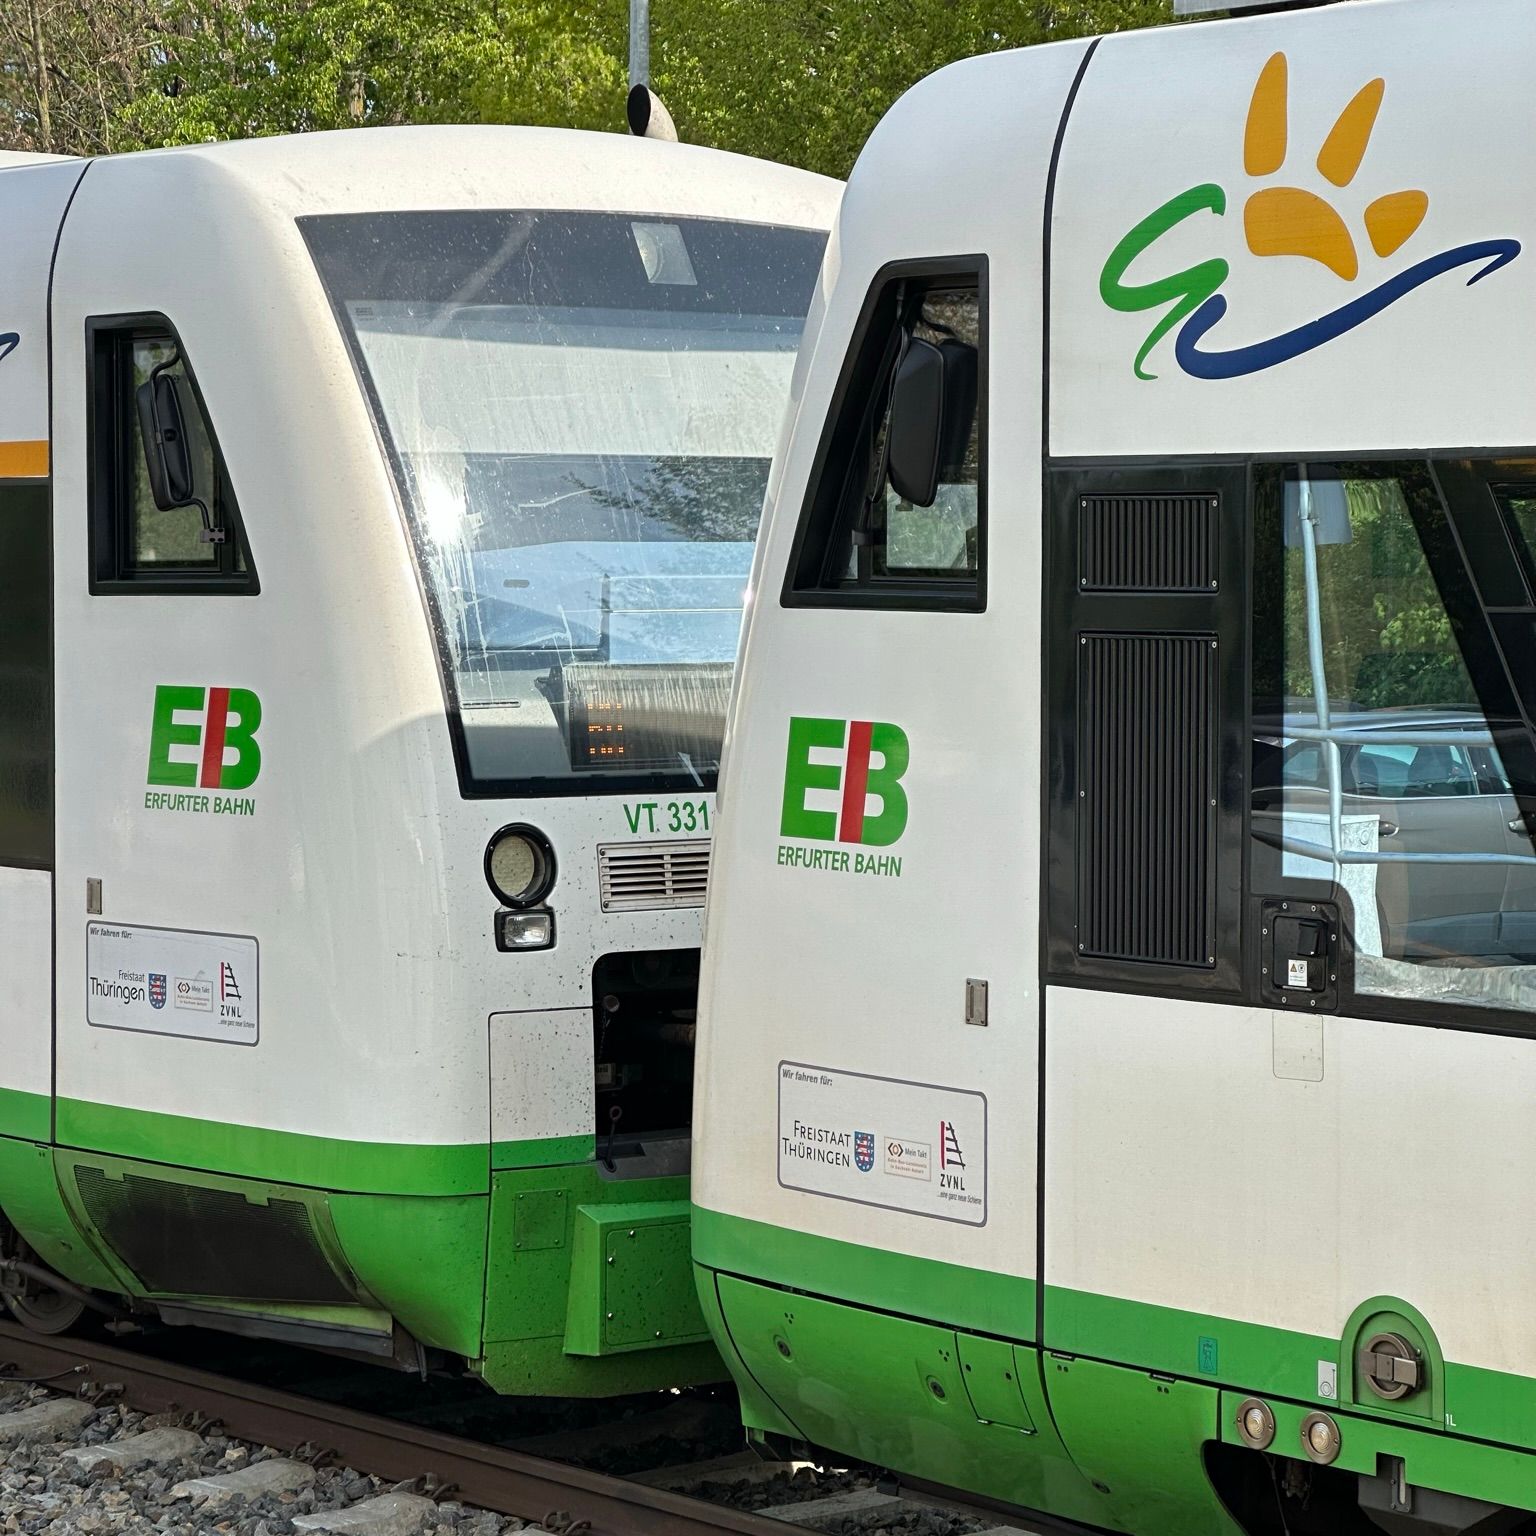 Erfurter Bahn